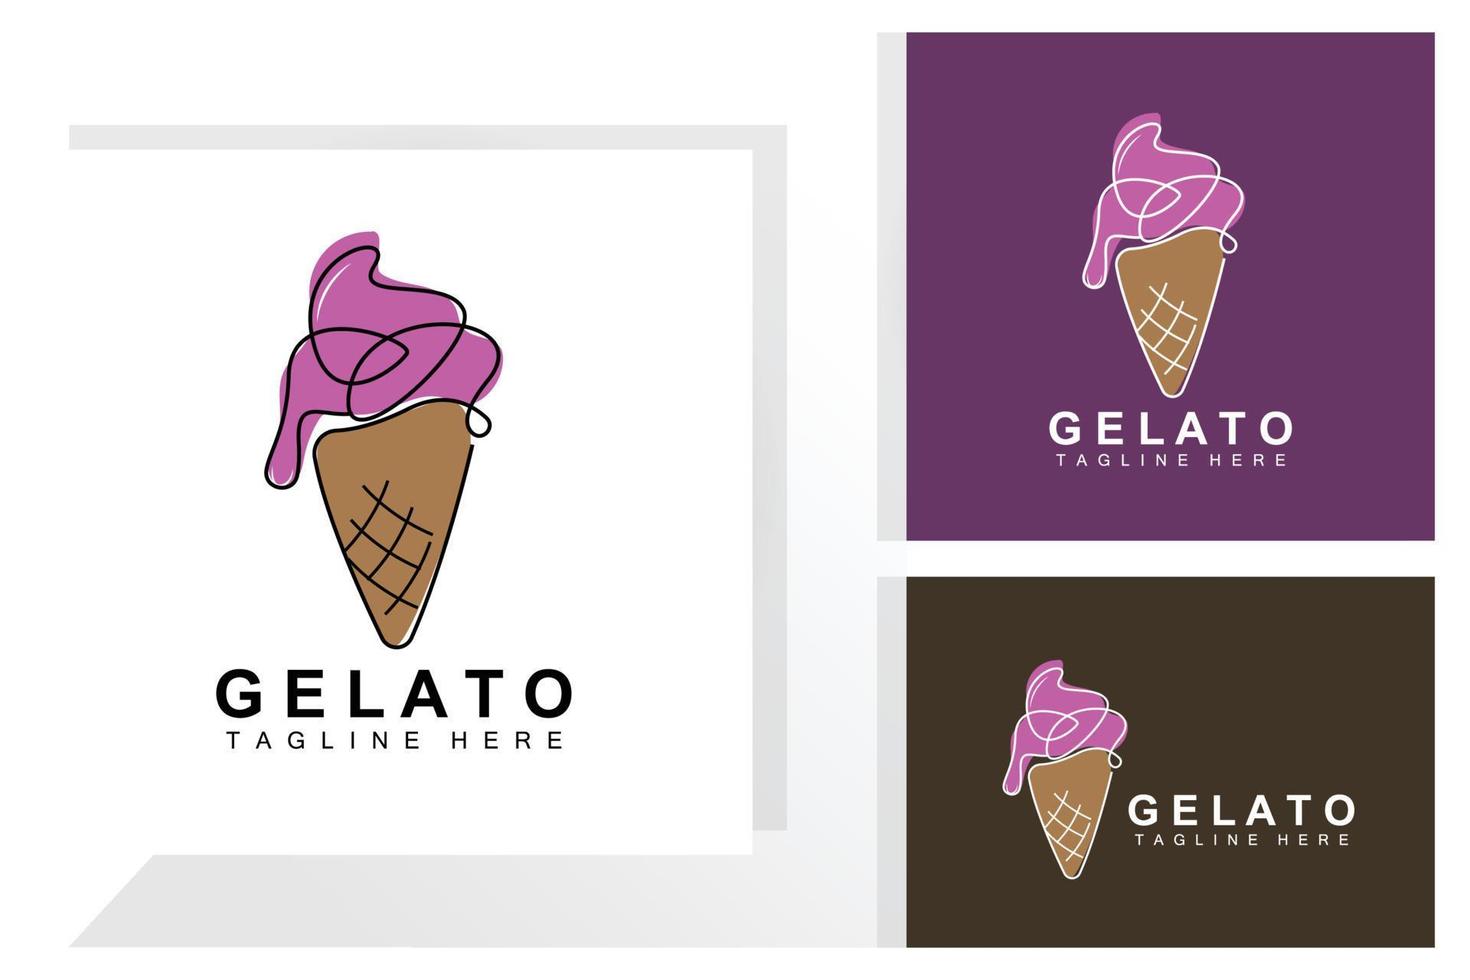 diseño de logotipo de helado, comida dulce y fría, productos de la empresa de marca vectorial vector